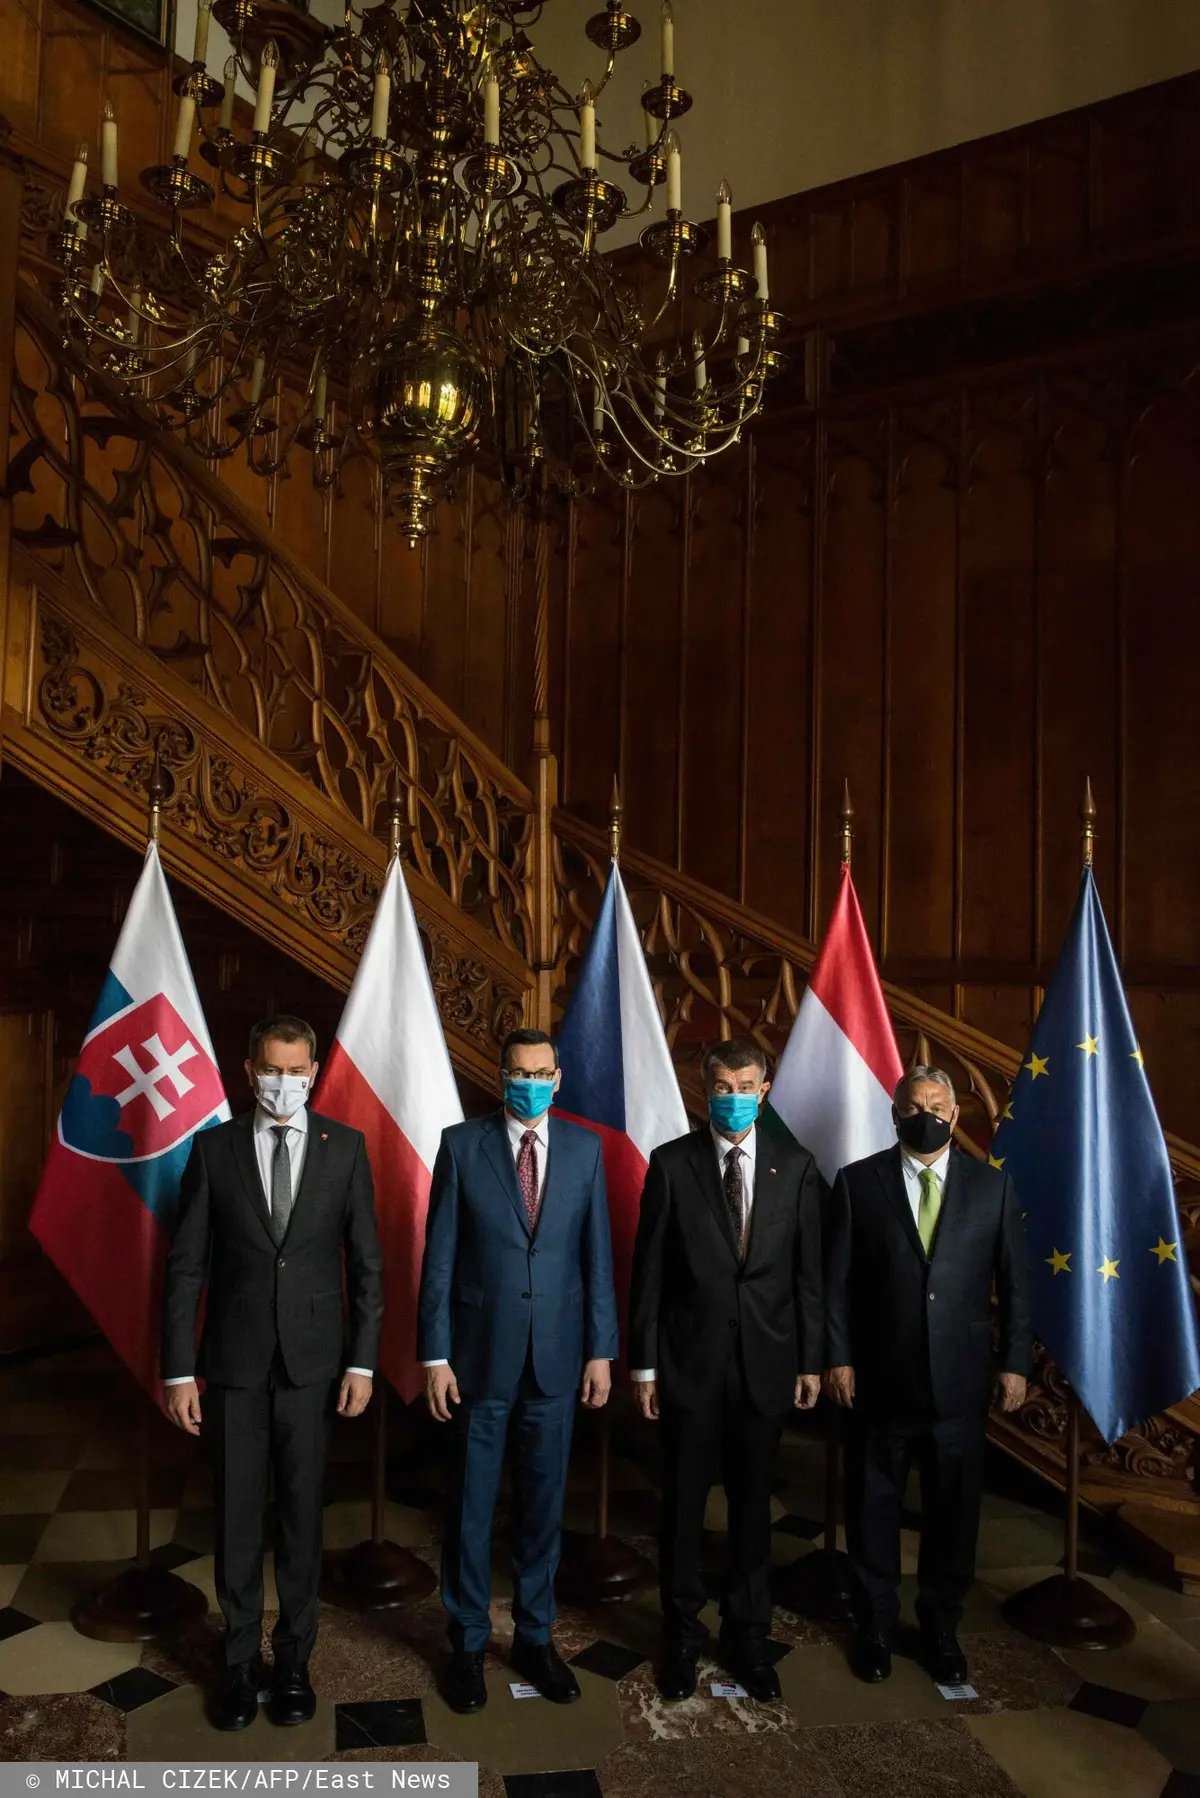 Premier Słowacji Igor Matovic, premier Polski Mateusz Morawiecki, premier Czech Andrej Babis i premier Węgier Viktor Orban pozują do zdjęcia grupowego na początku spotkania Grupy Wyszehradzkiej (V4) 11 czerwca 2020 r. w Chateau Lednice w Czechach. 